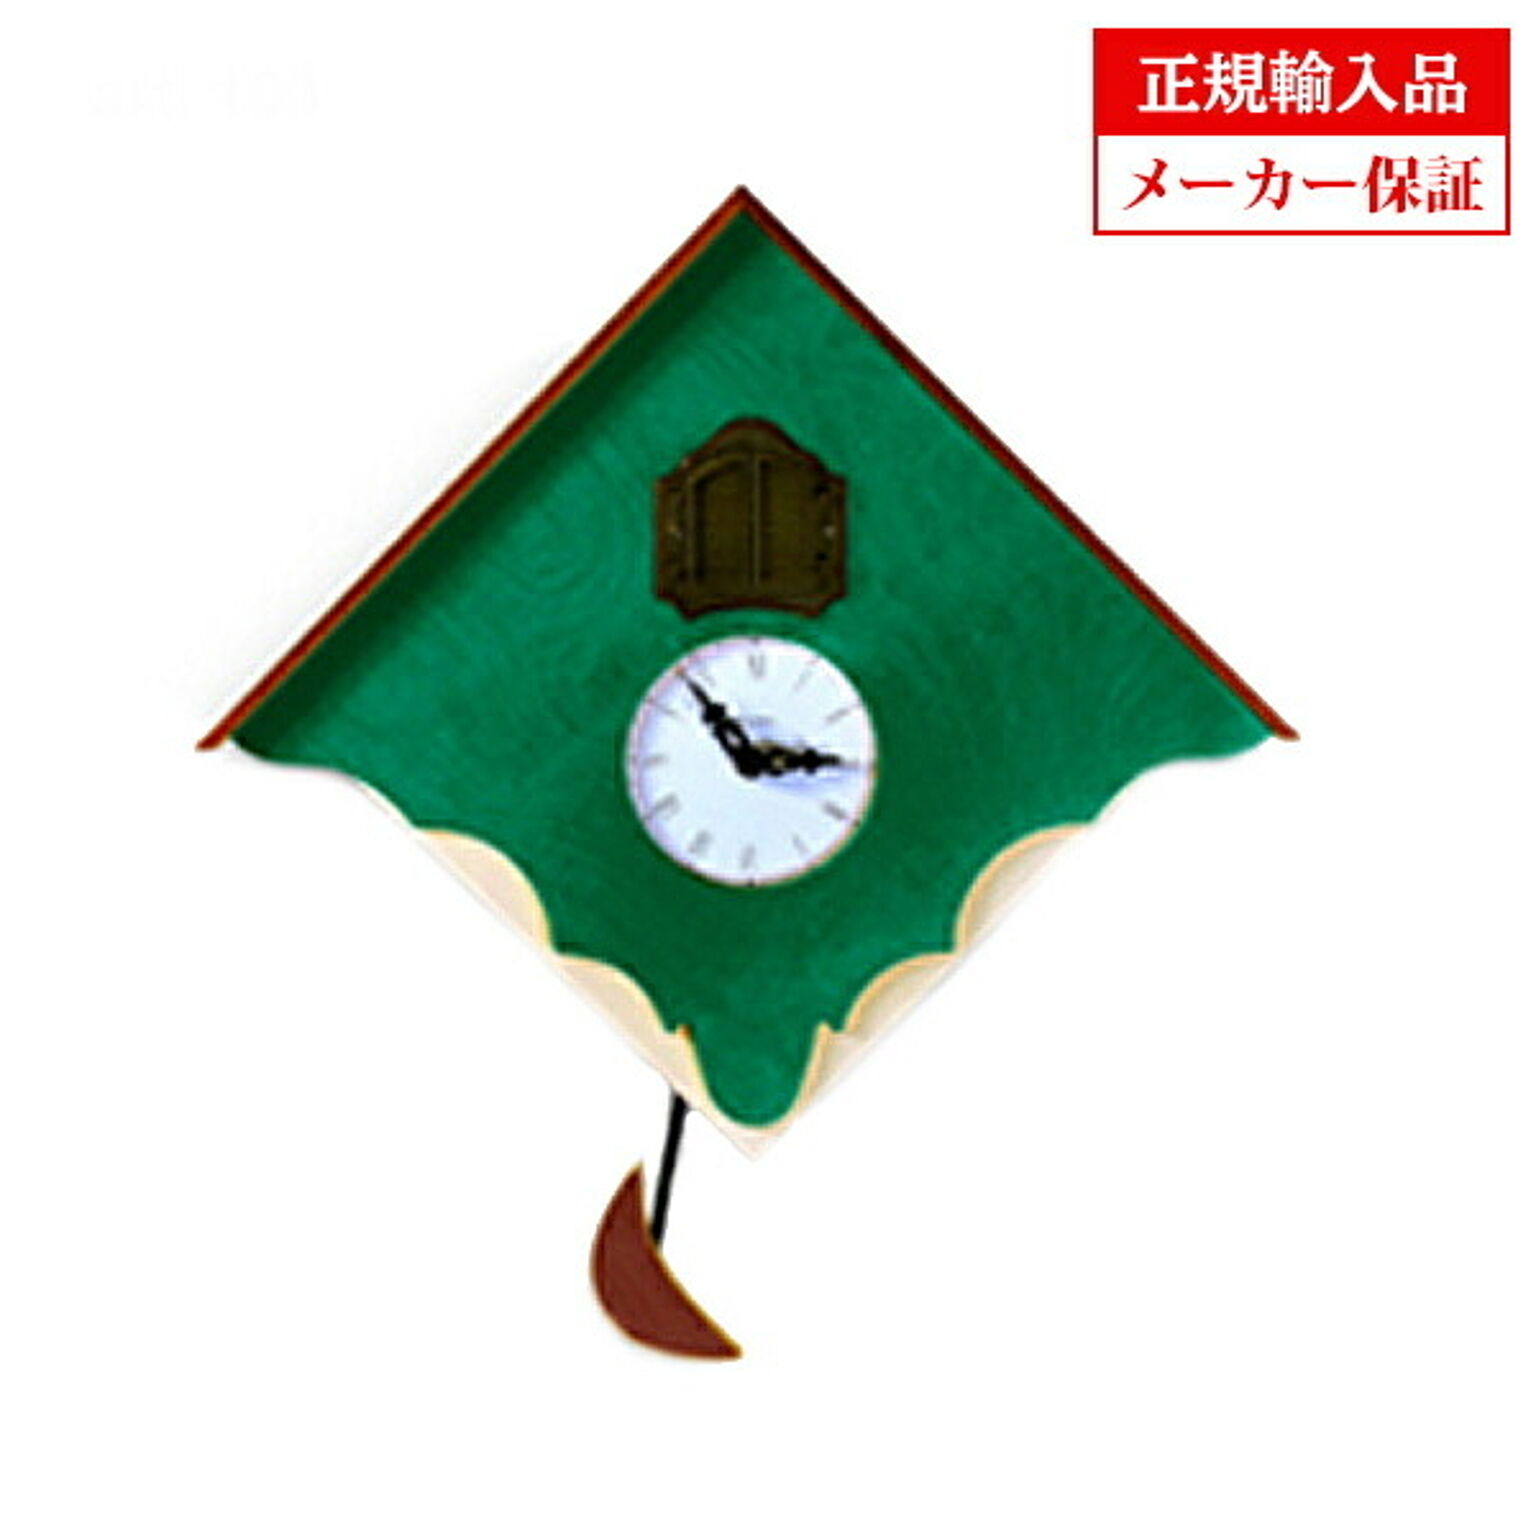 【正規輸入品】 イタリア ピロンディーニ 103-GREEN Pirondini 木製鳩時計 Chalet 103 グリーン